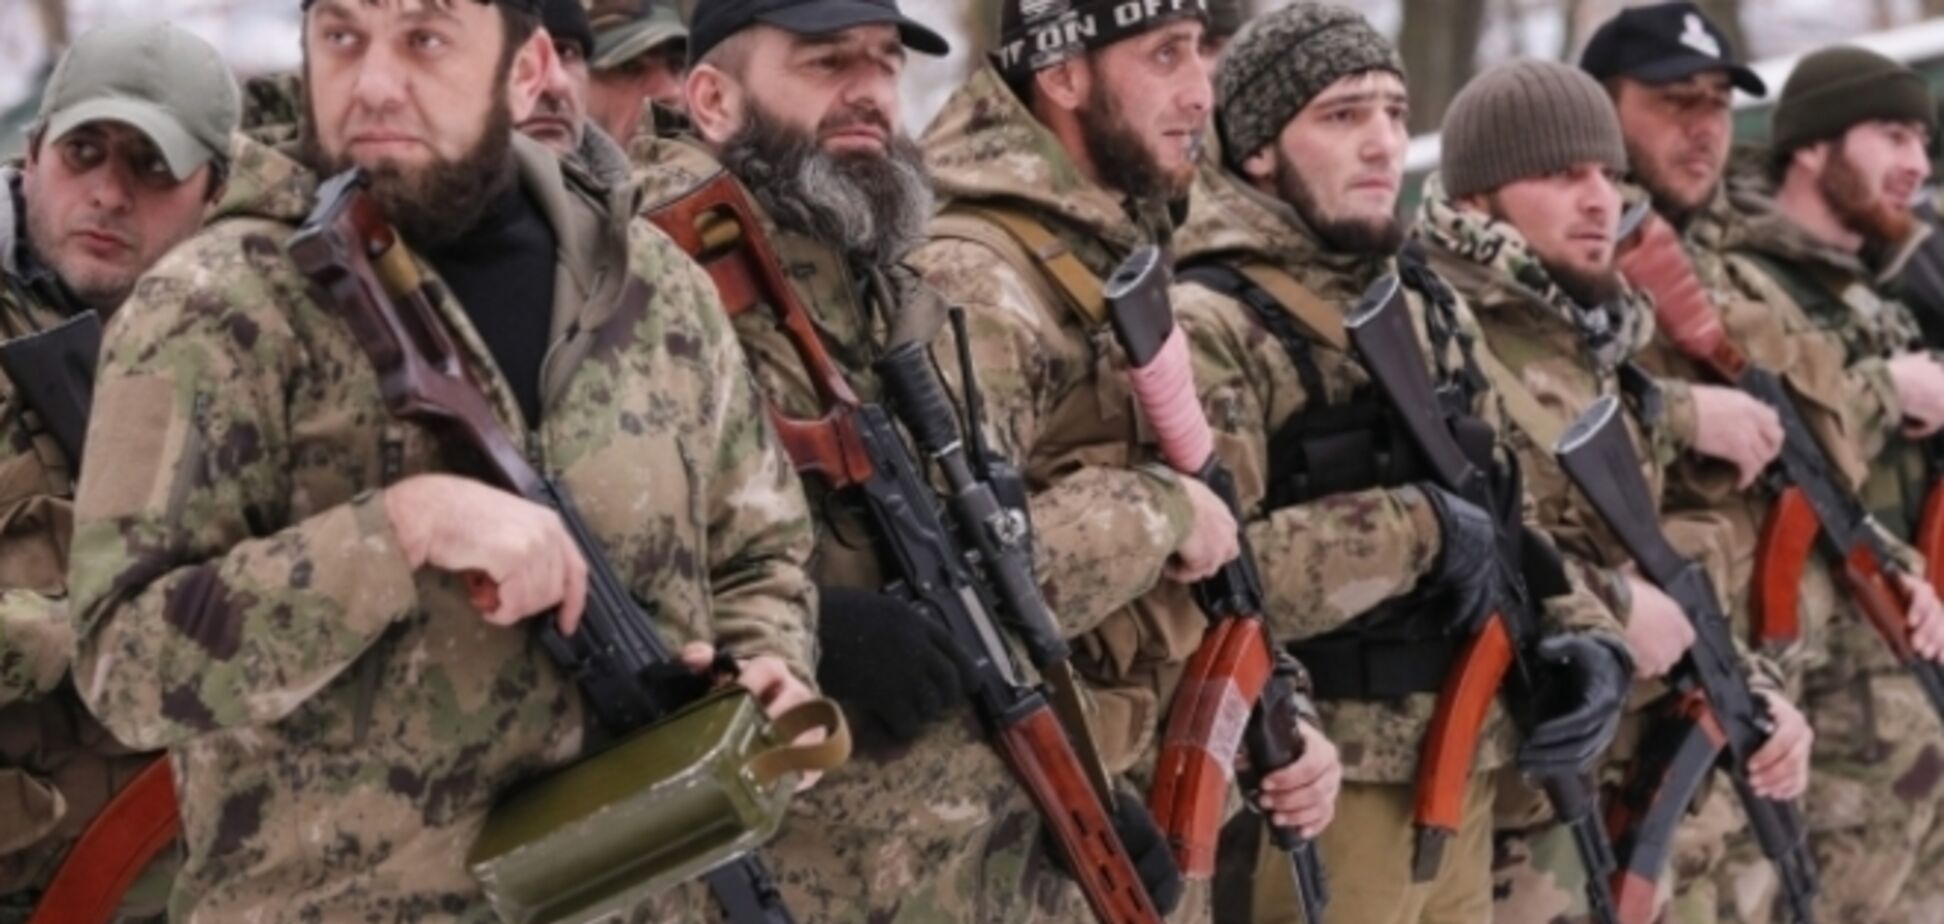 Итальянские СМИ: на Донбассе идет чеченская гражданская война